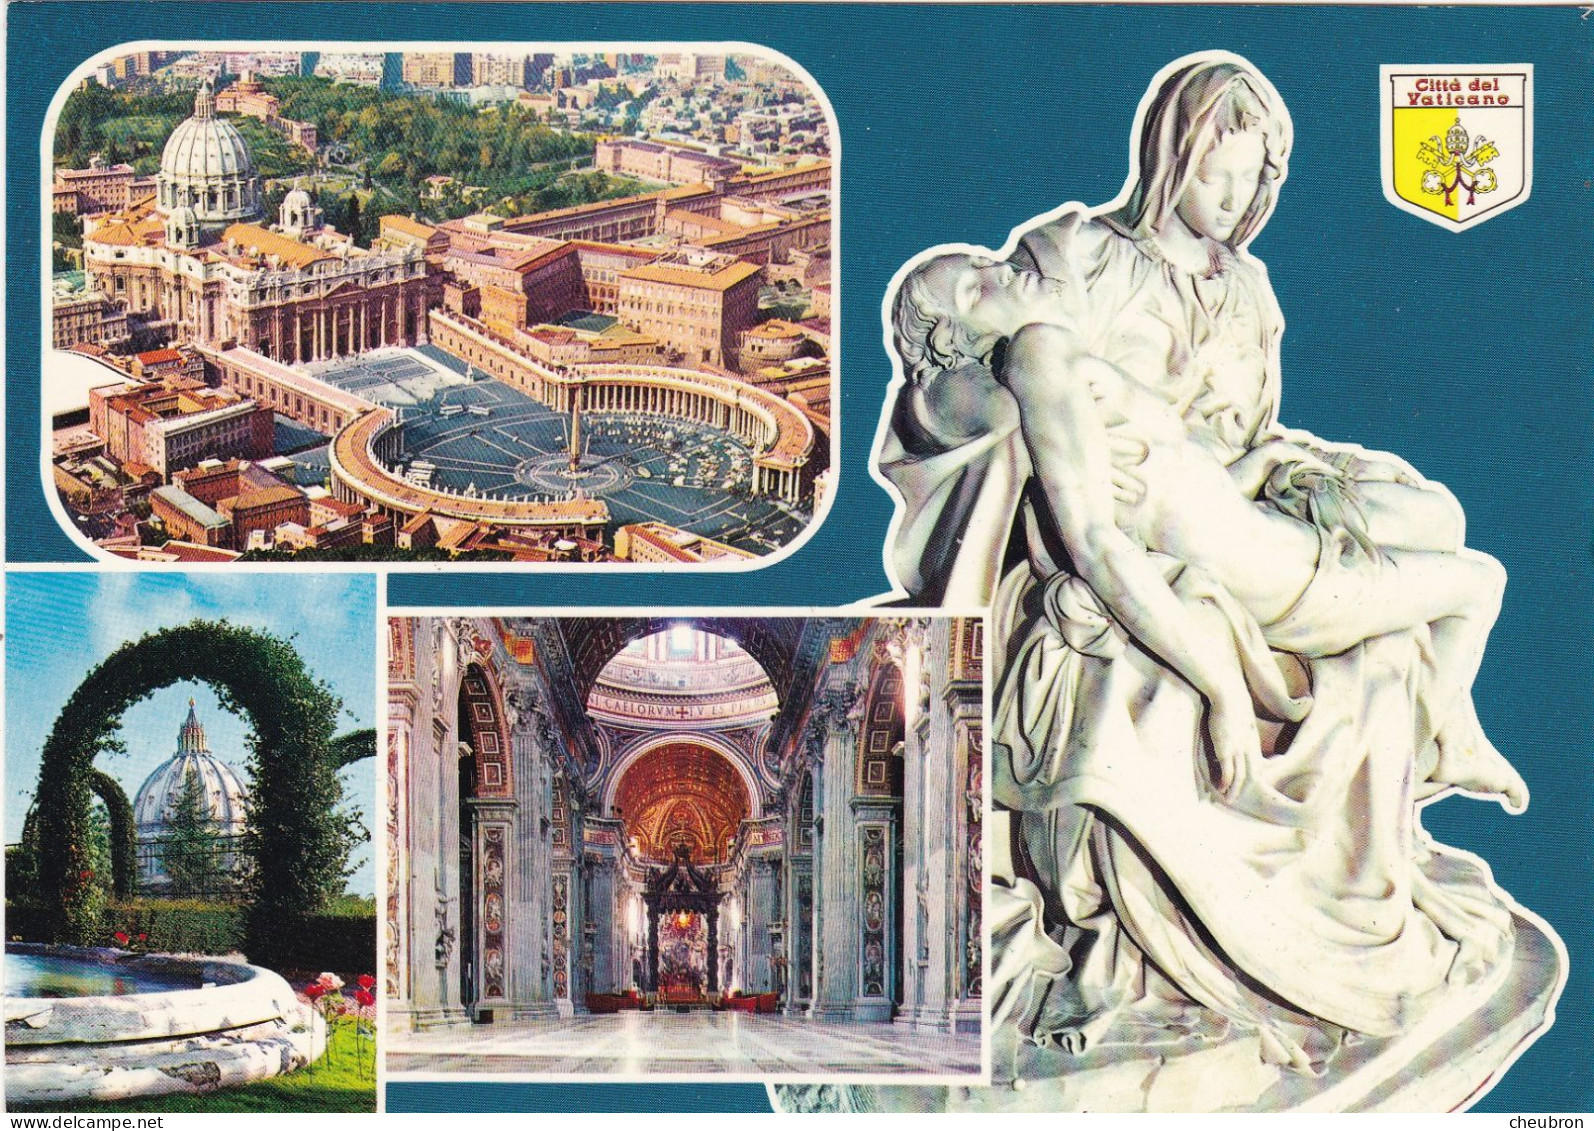 VATICAN. ROME(ENVOYE DE). MULTIVUES. CITE DEL VATICANO. .ANNÉE 1987 + TEXTE + TIMBRE - Vaticano (Ciudad Del)